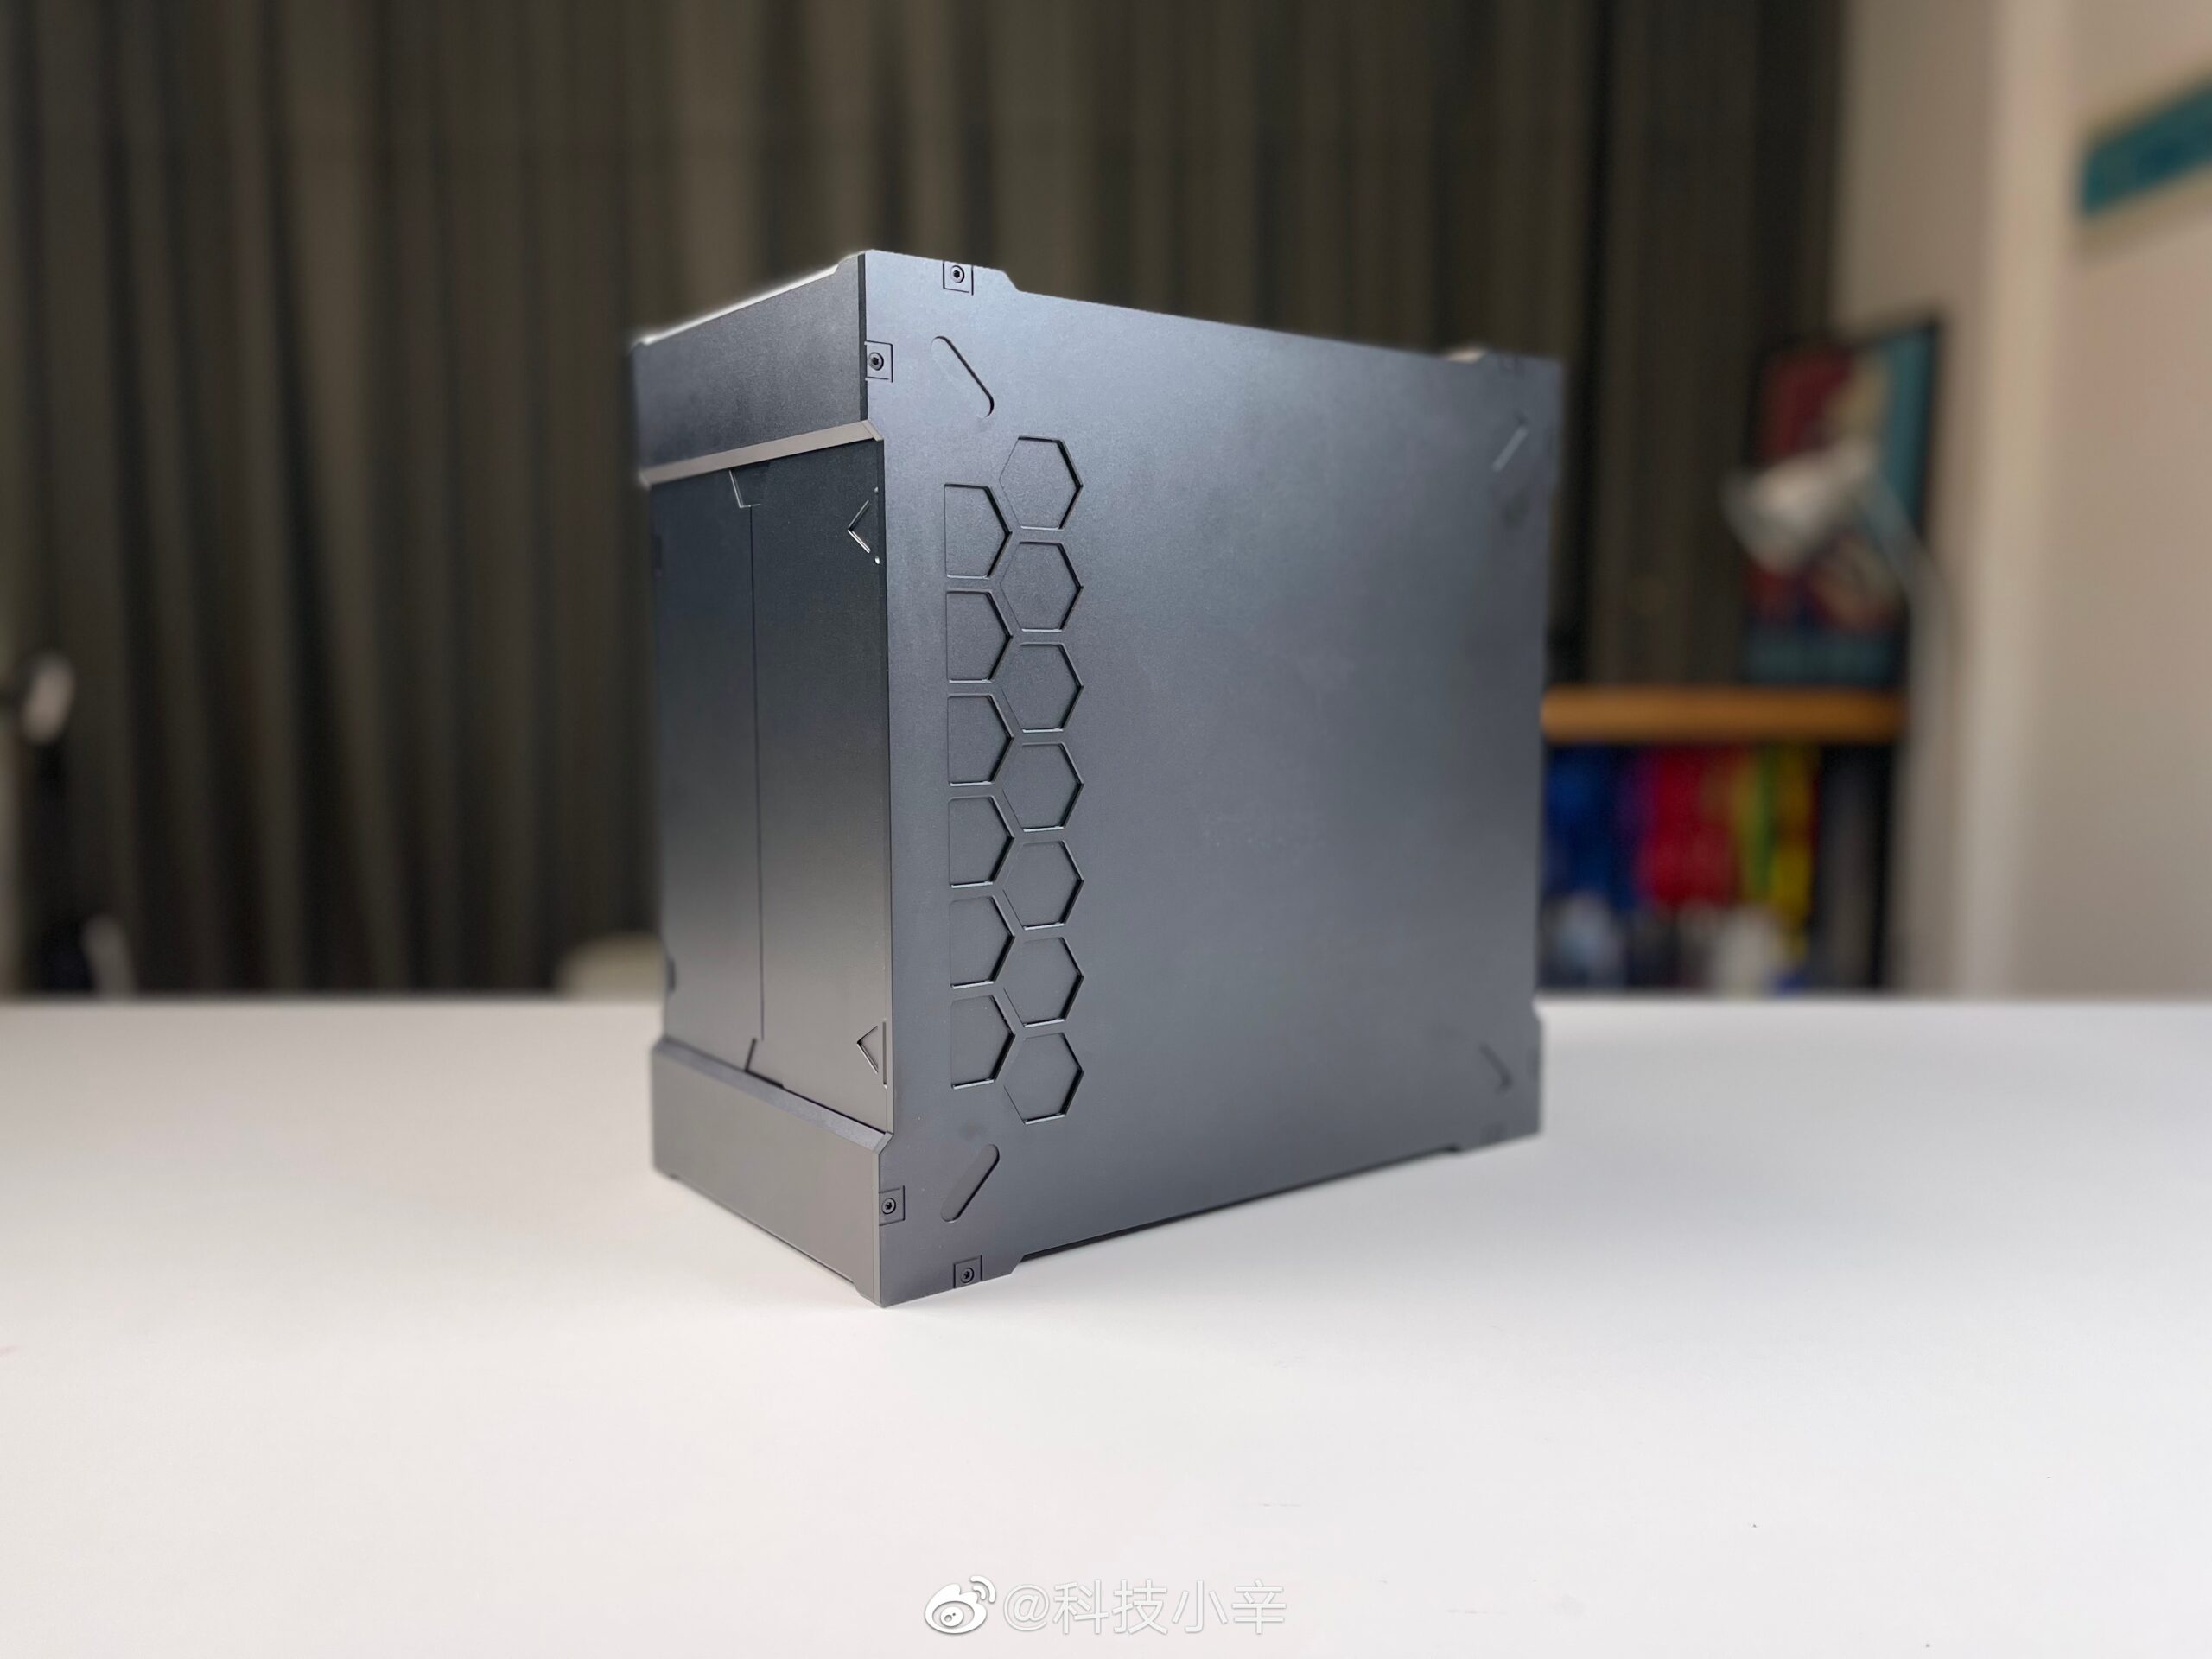 Xiaomi se lance sur le marché des ordinateurs de bureau avec deux modèles - l'un d'eux sera doté du Ryzen 7 6800U et coûtera 570 $.